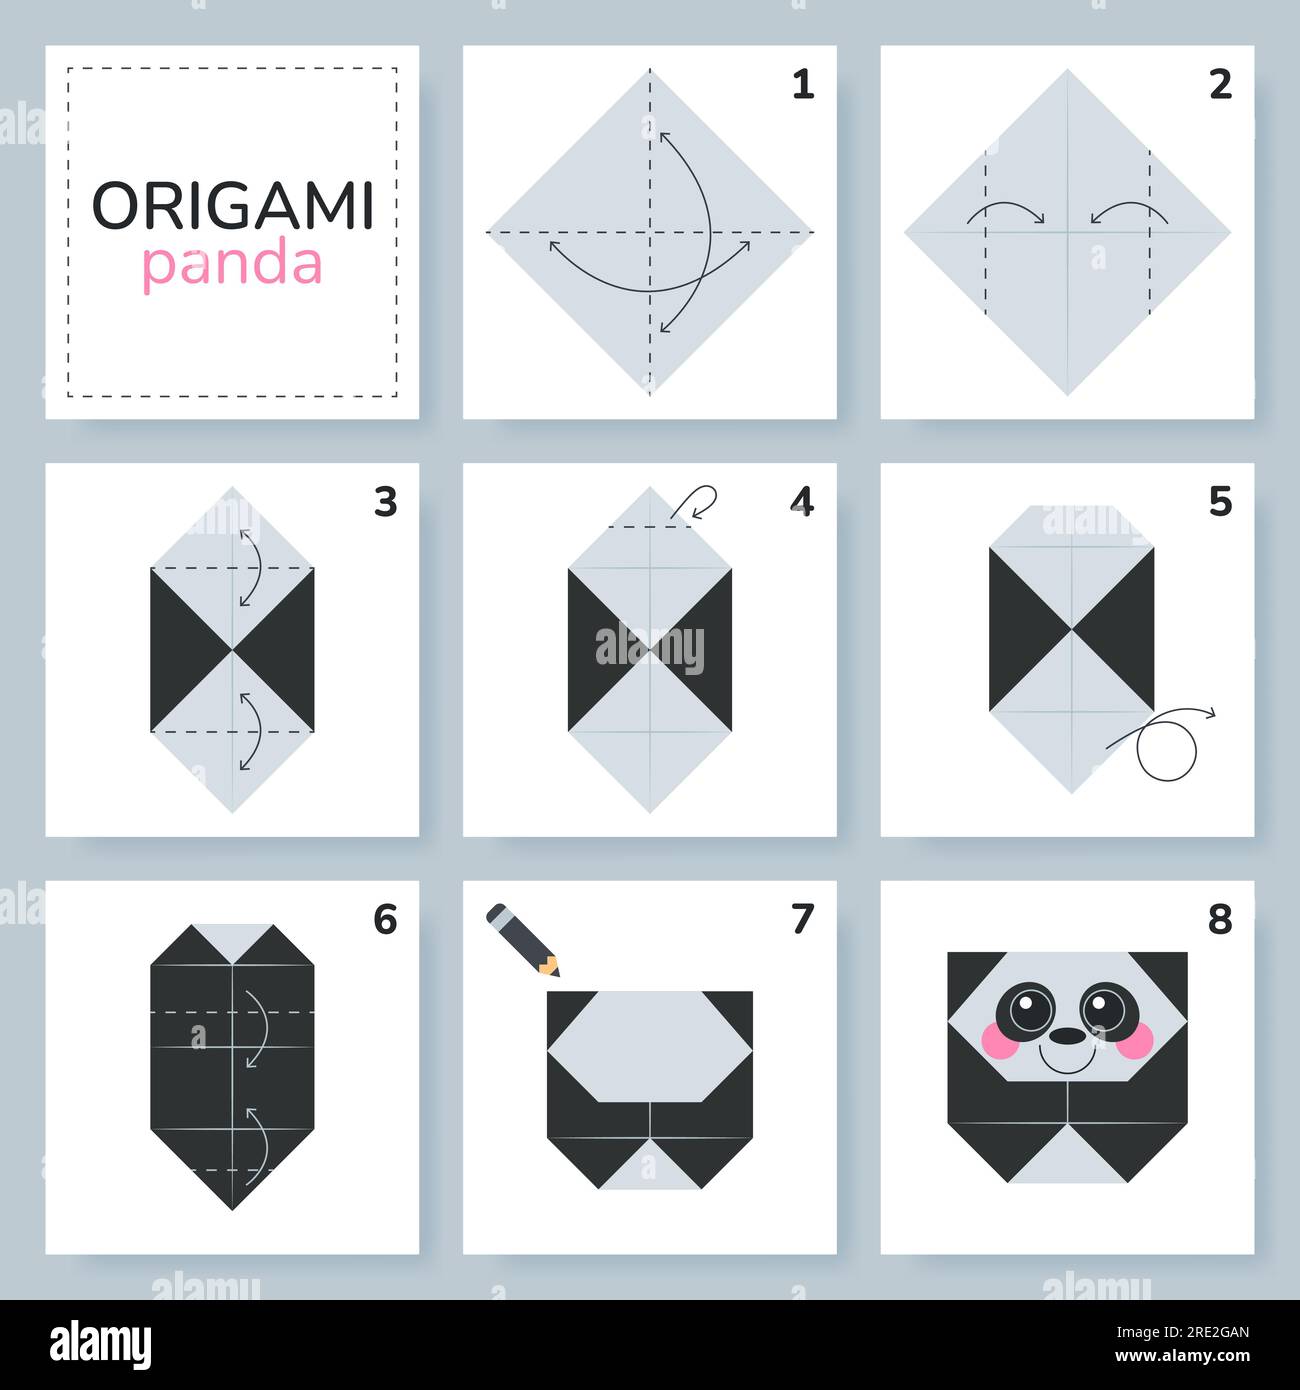 Tutorial De Origami Para Niños. Lindo Panda De Origami. Ilustraciones svg,  vectoriales, clip art vectorizado libre de derechos. Image 195013785